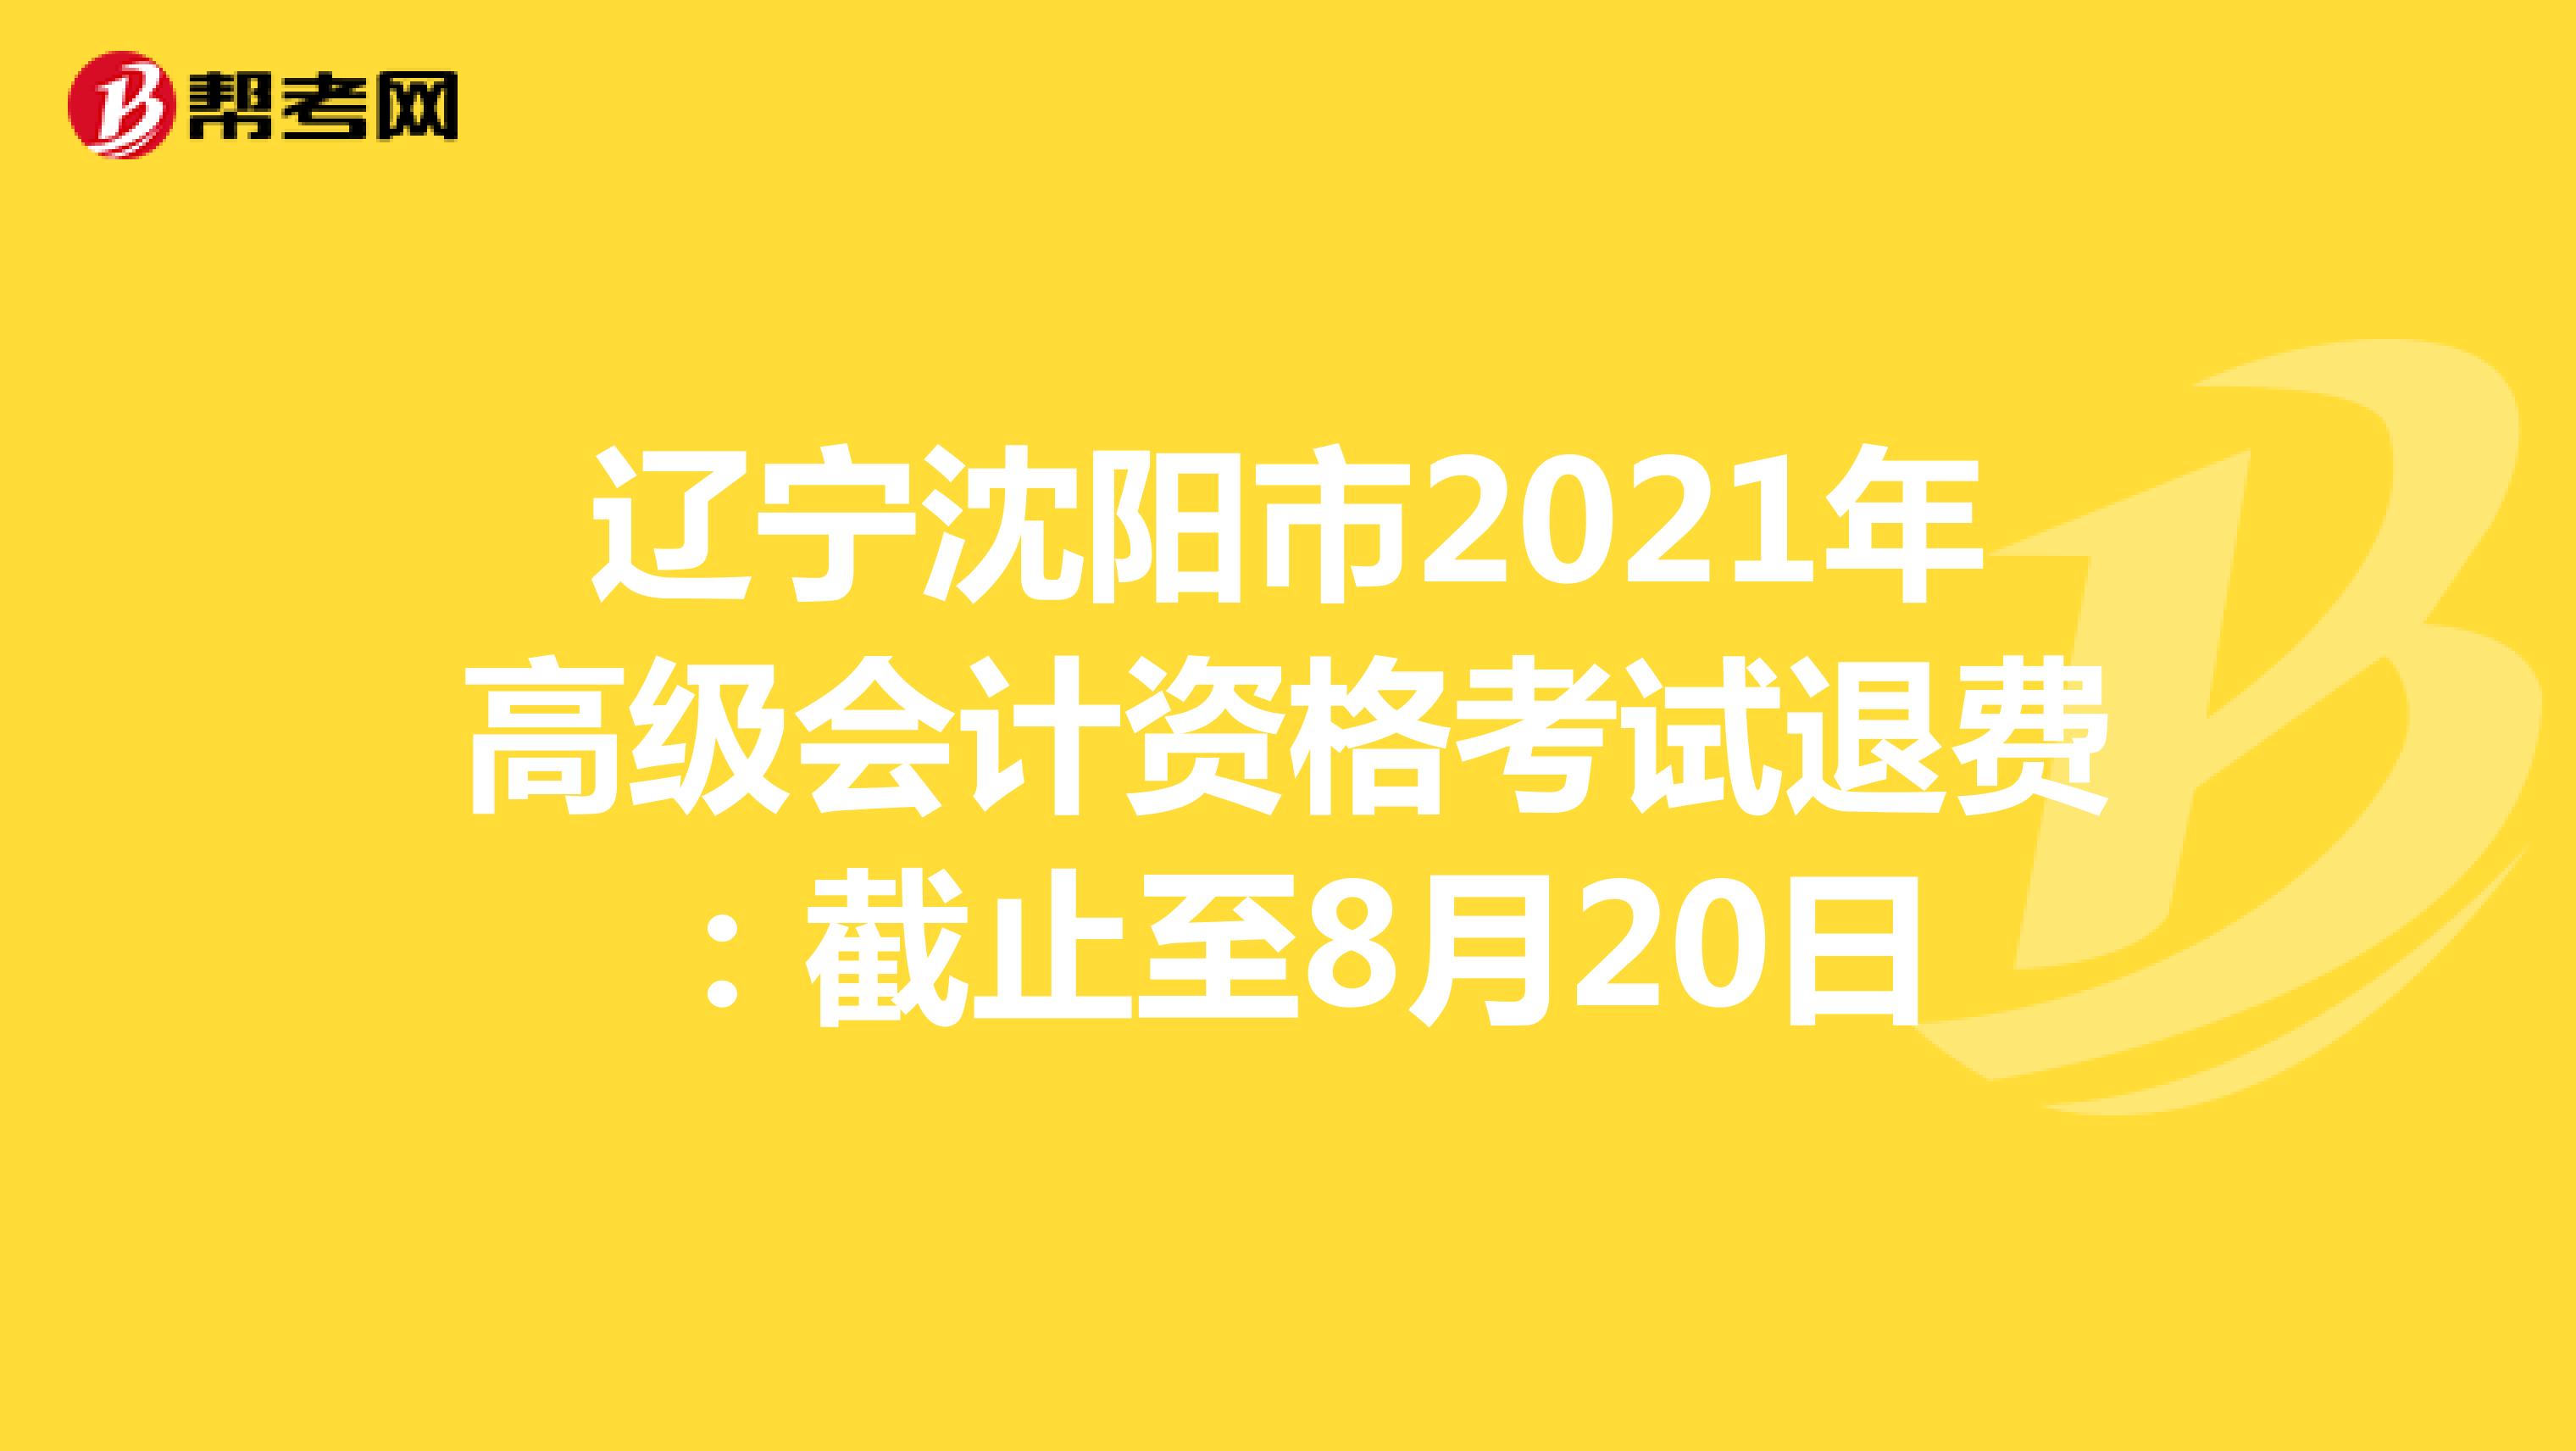 辽宁沈阳市2021年高级会计资格考试退费：截止至8月20日